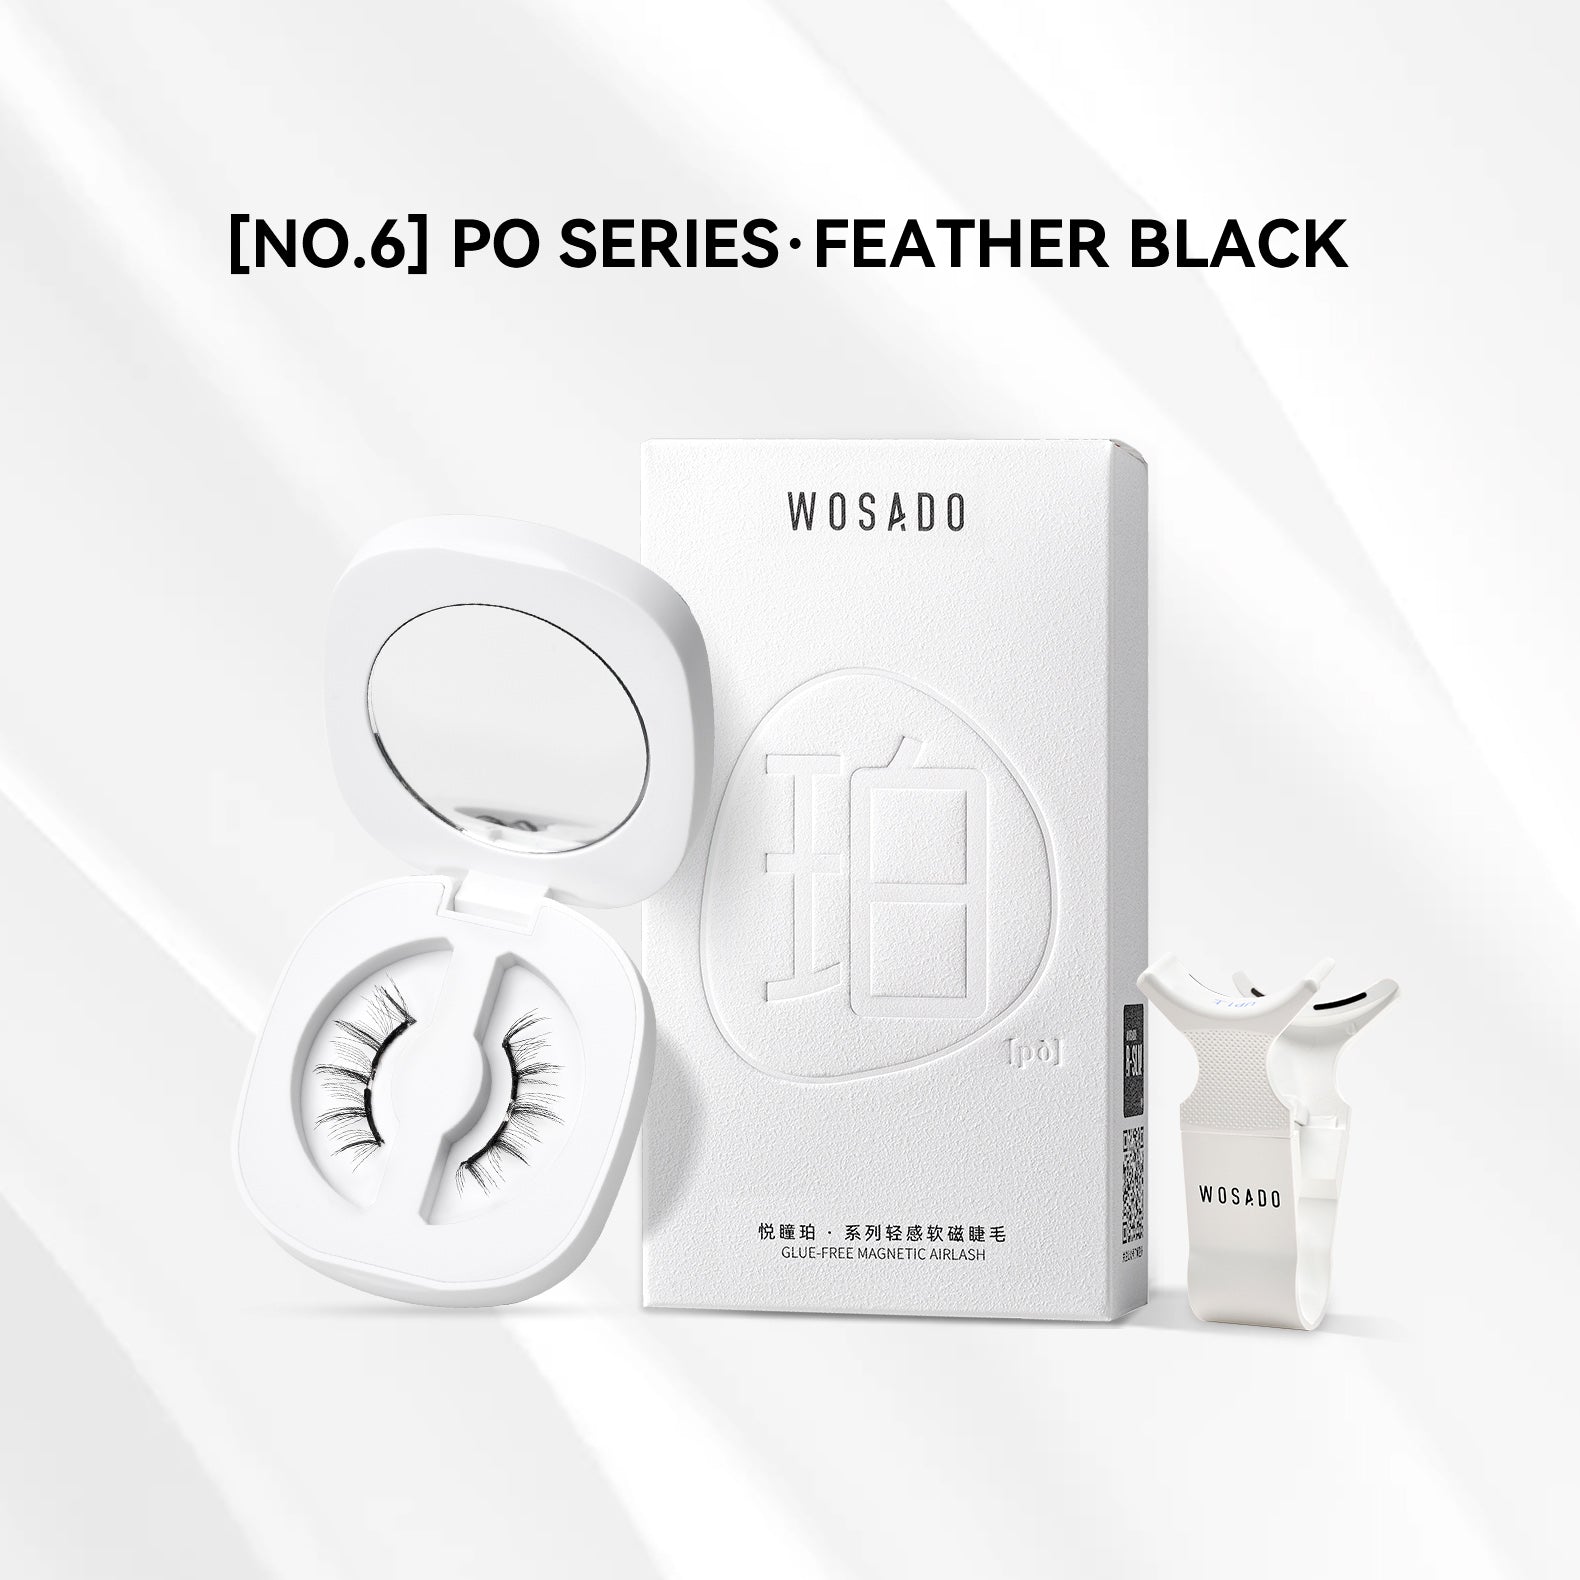 【WOSADO】NO.6 Feather Black